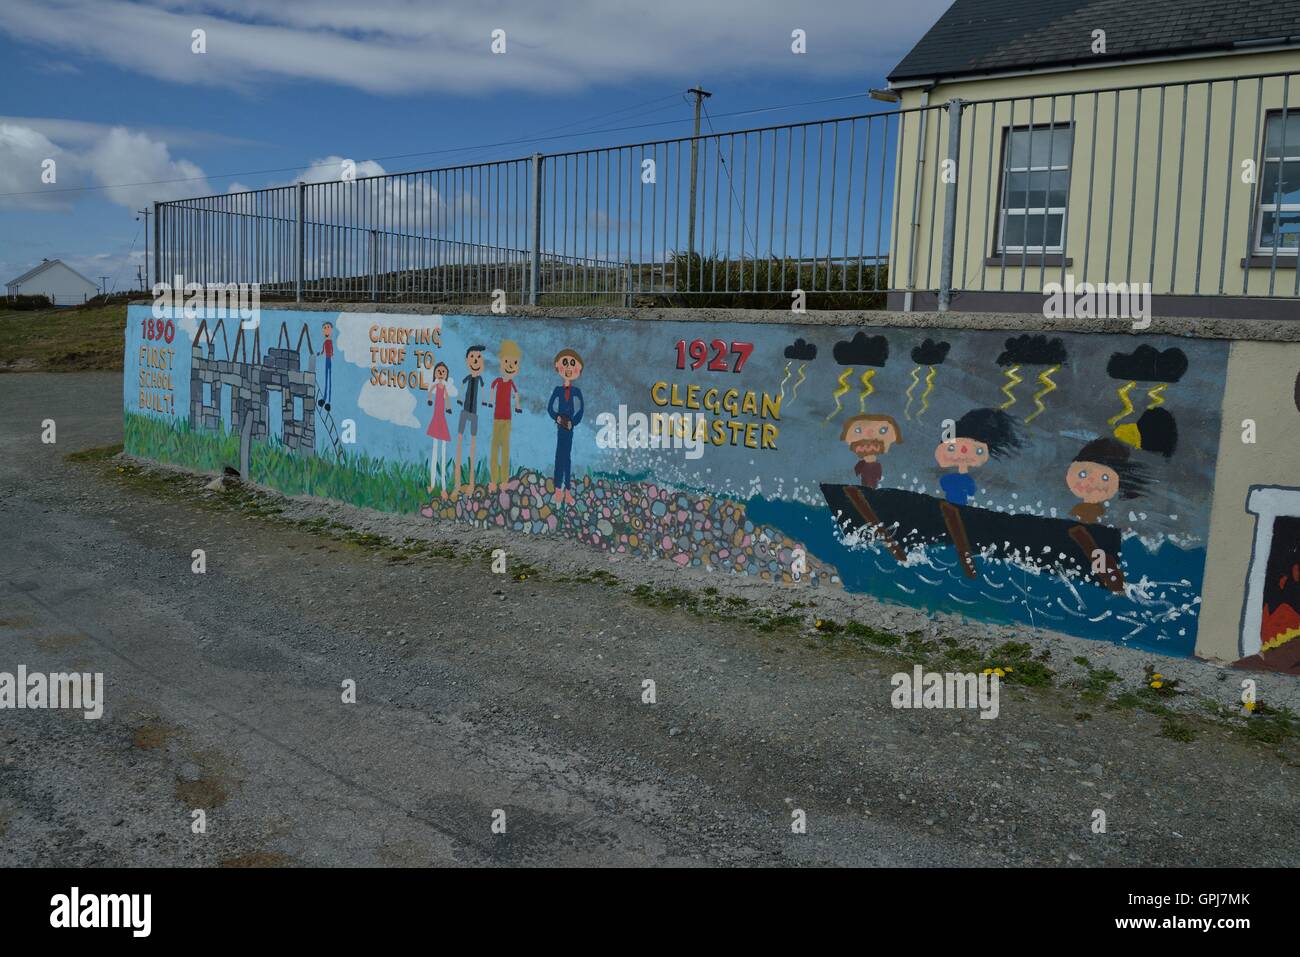 Inishbofin est une île irlandaise dans le comté de Galway à 8 km de la côte du Connemara. - L'île irlandaise située dans le comté de Galway, Iuna isla irlandesa.. Banque D'Images